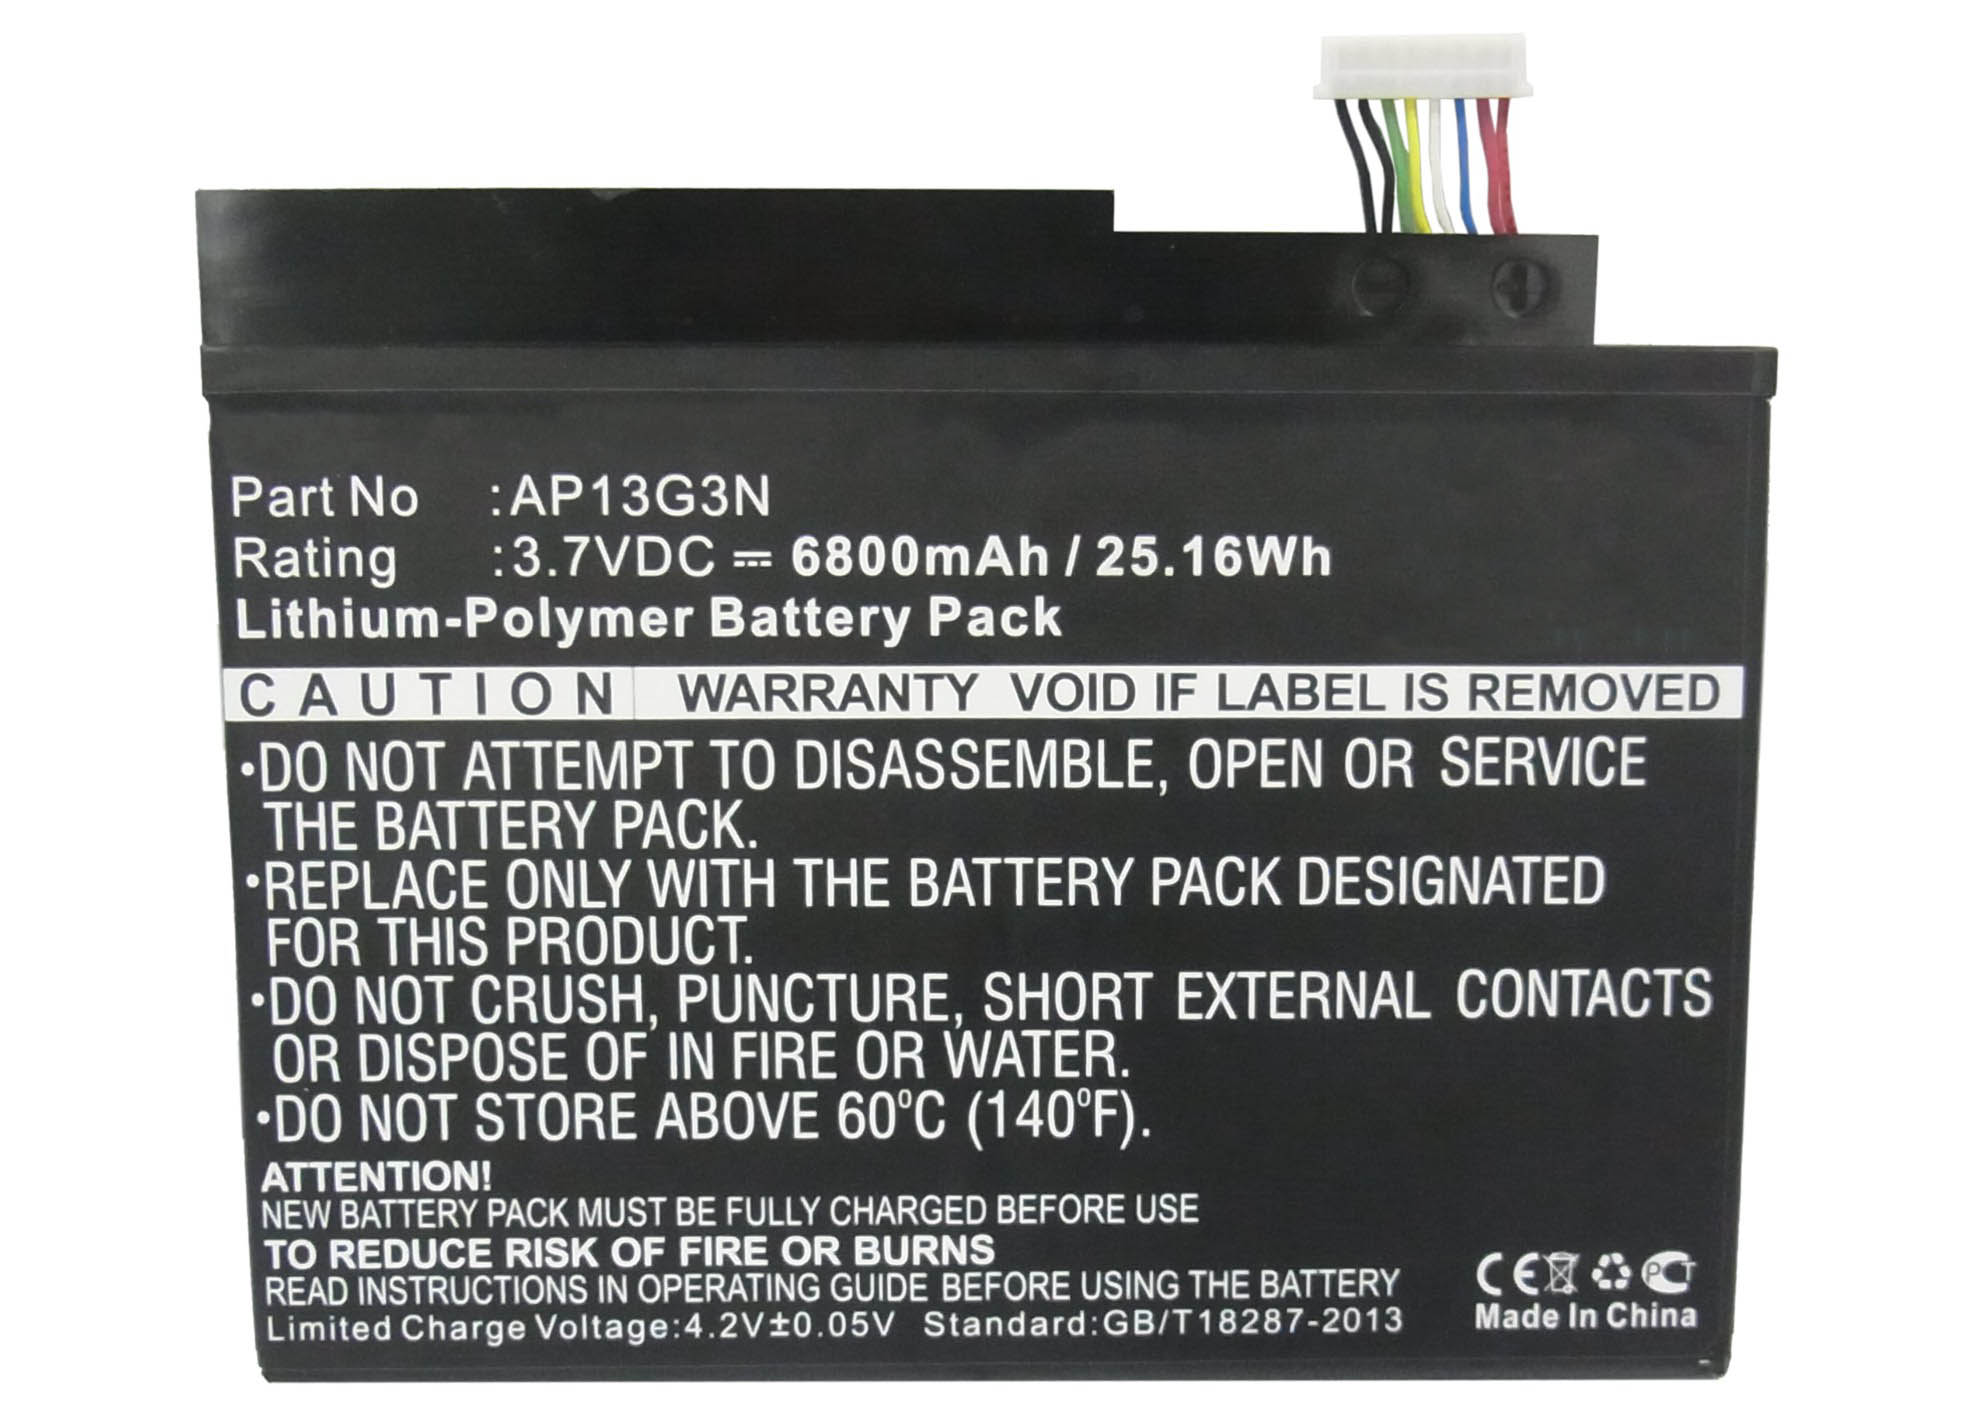 Batteries for AcerTablet